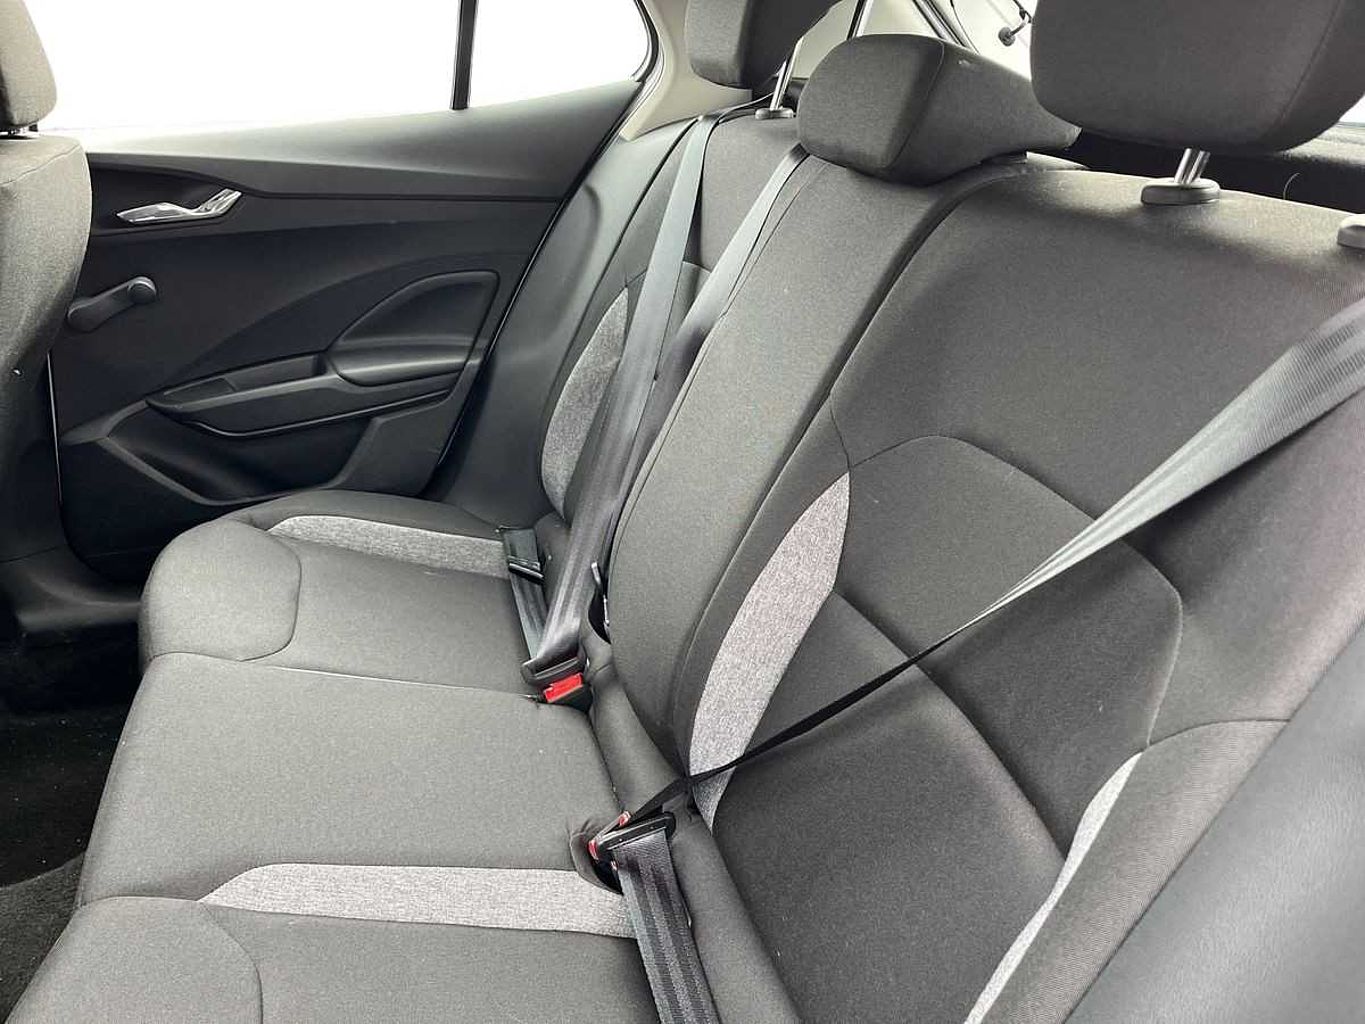 SKODA Fabia 1.0 MPI (80ps) SE Comfort 5-Dr Hatchback